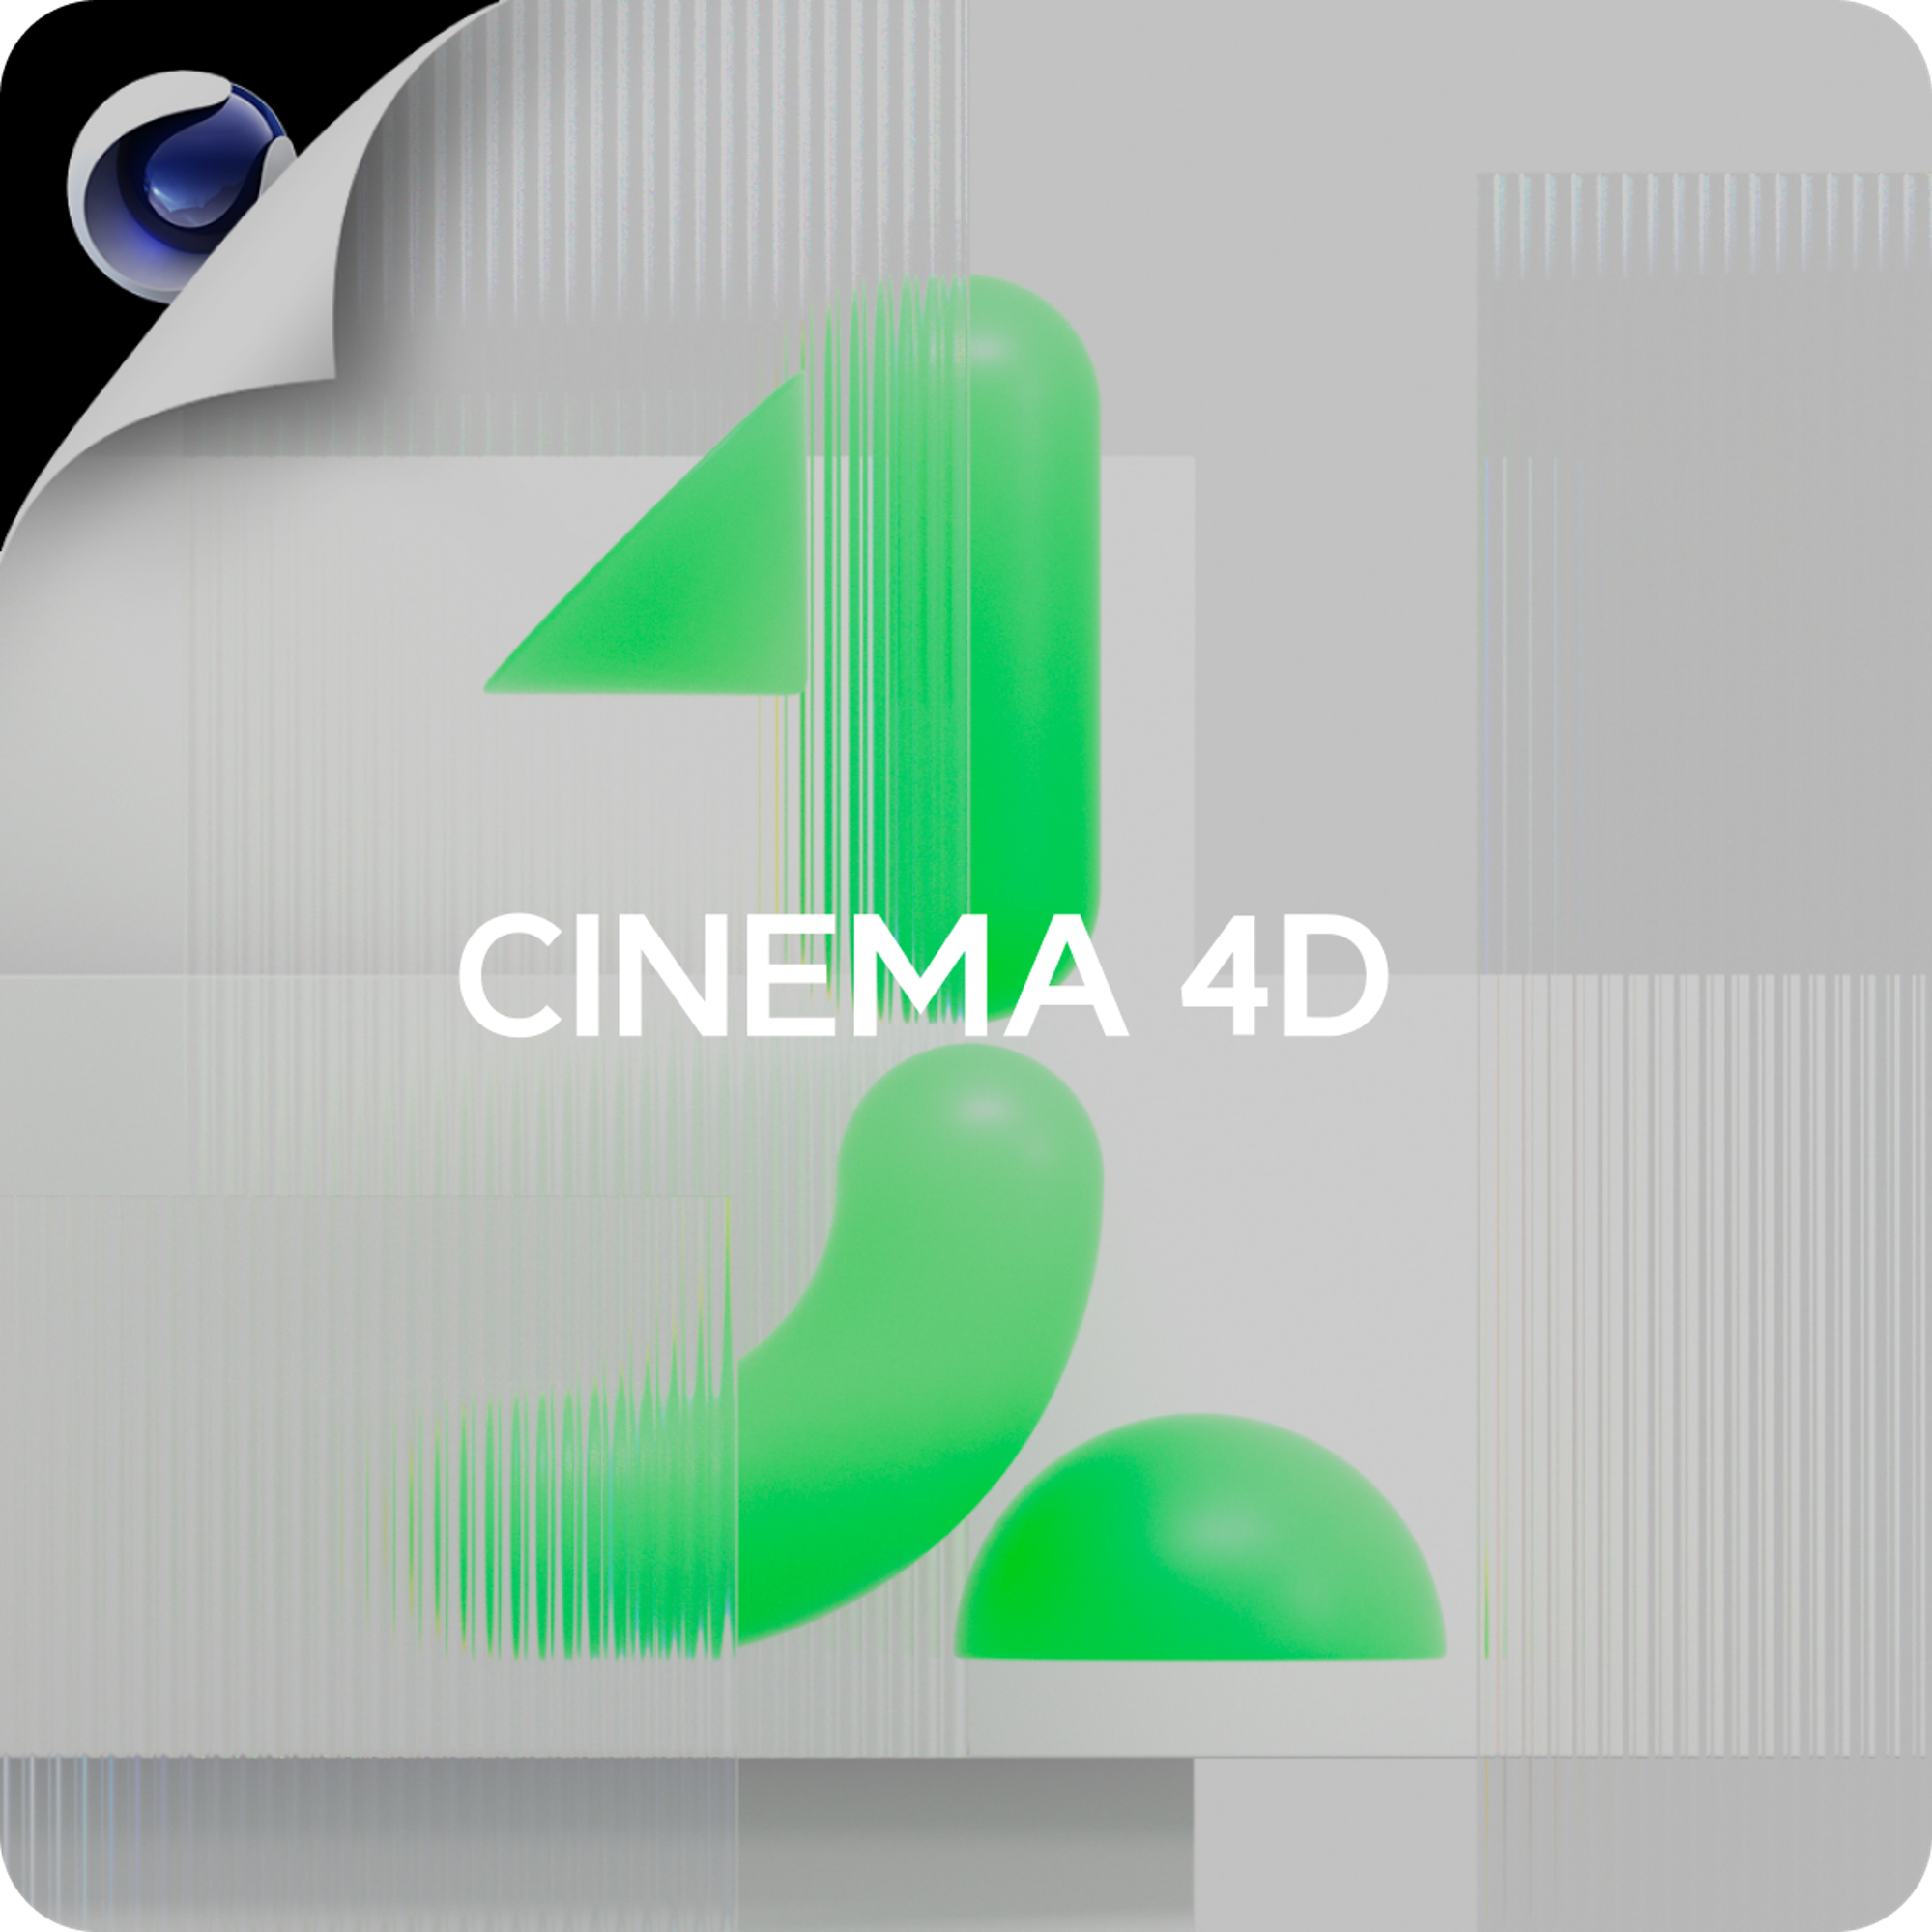 CINEMA 4D <br>PART.1 VISUALIZE